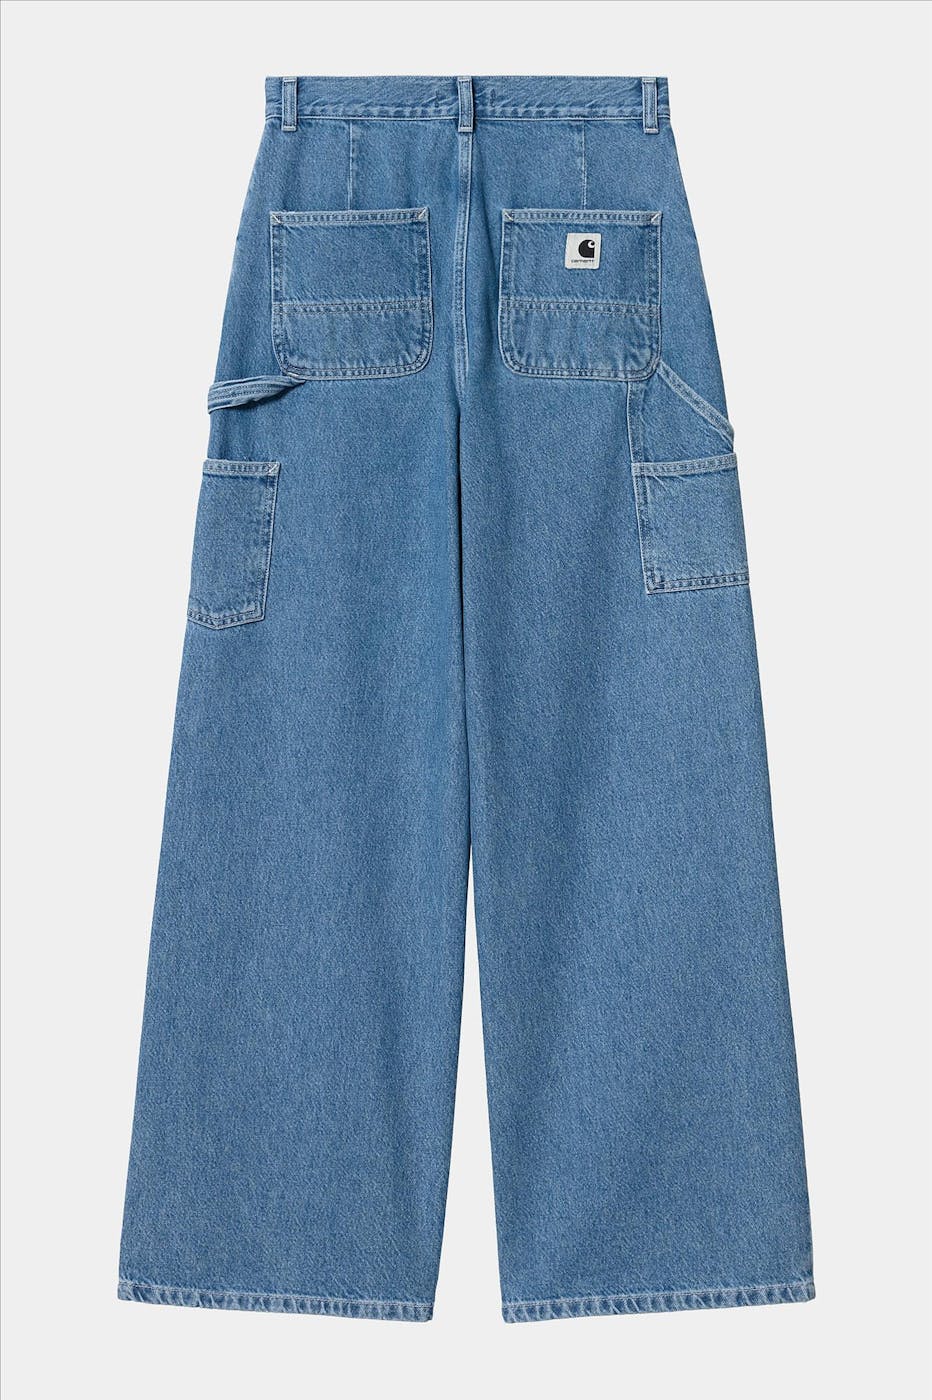 Carhartt WIP - Blauwe Jens jeans